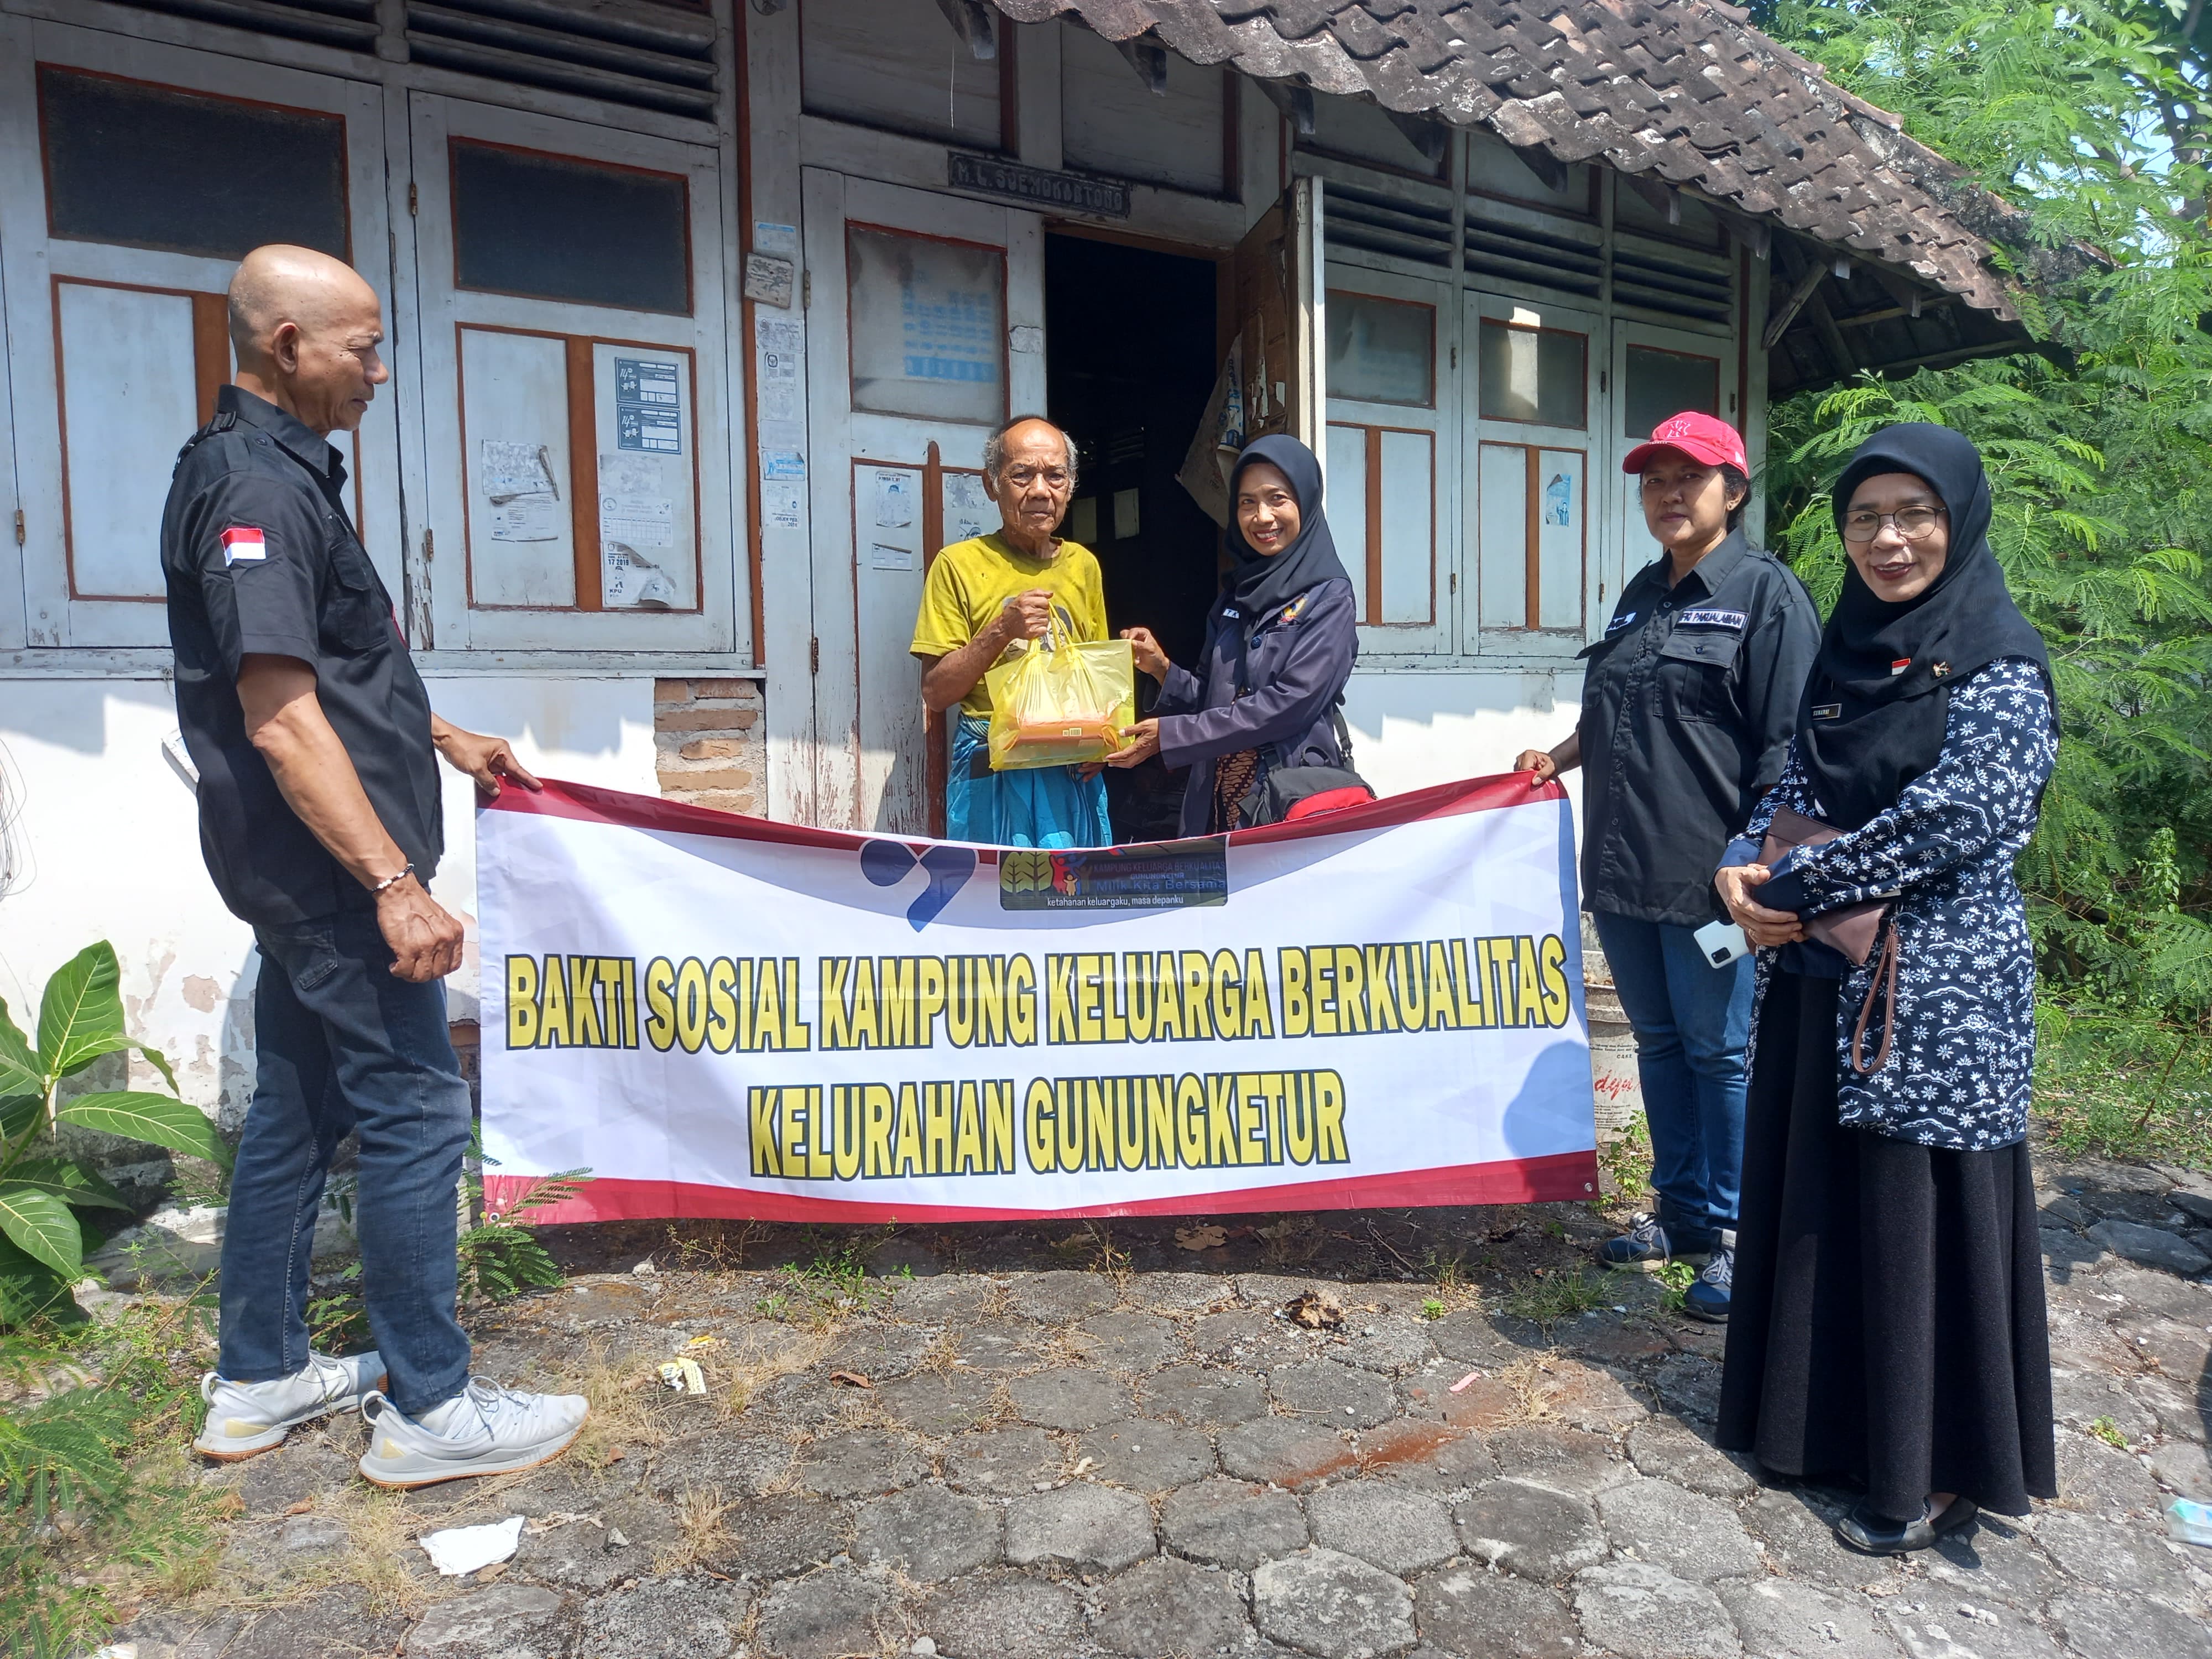 Aksi Peduli untuk Kelompok Rentan Kampung Keluarga Berkualitas Kelurahan Gunungketur